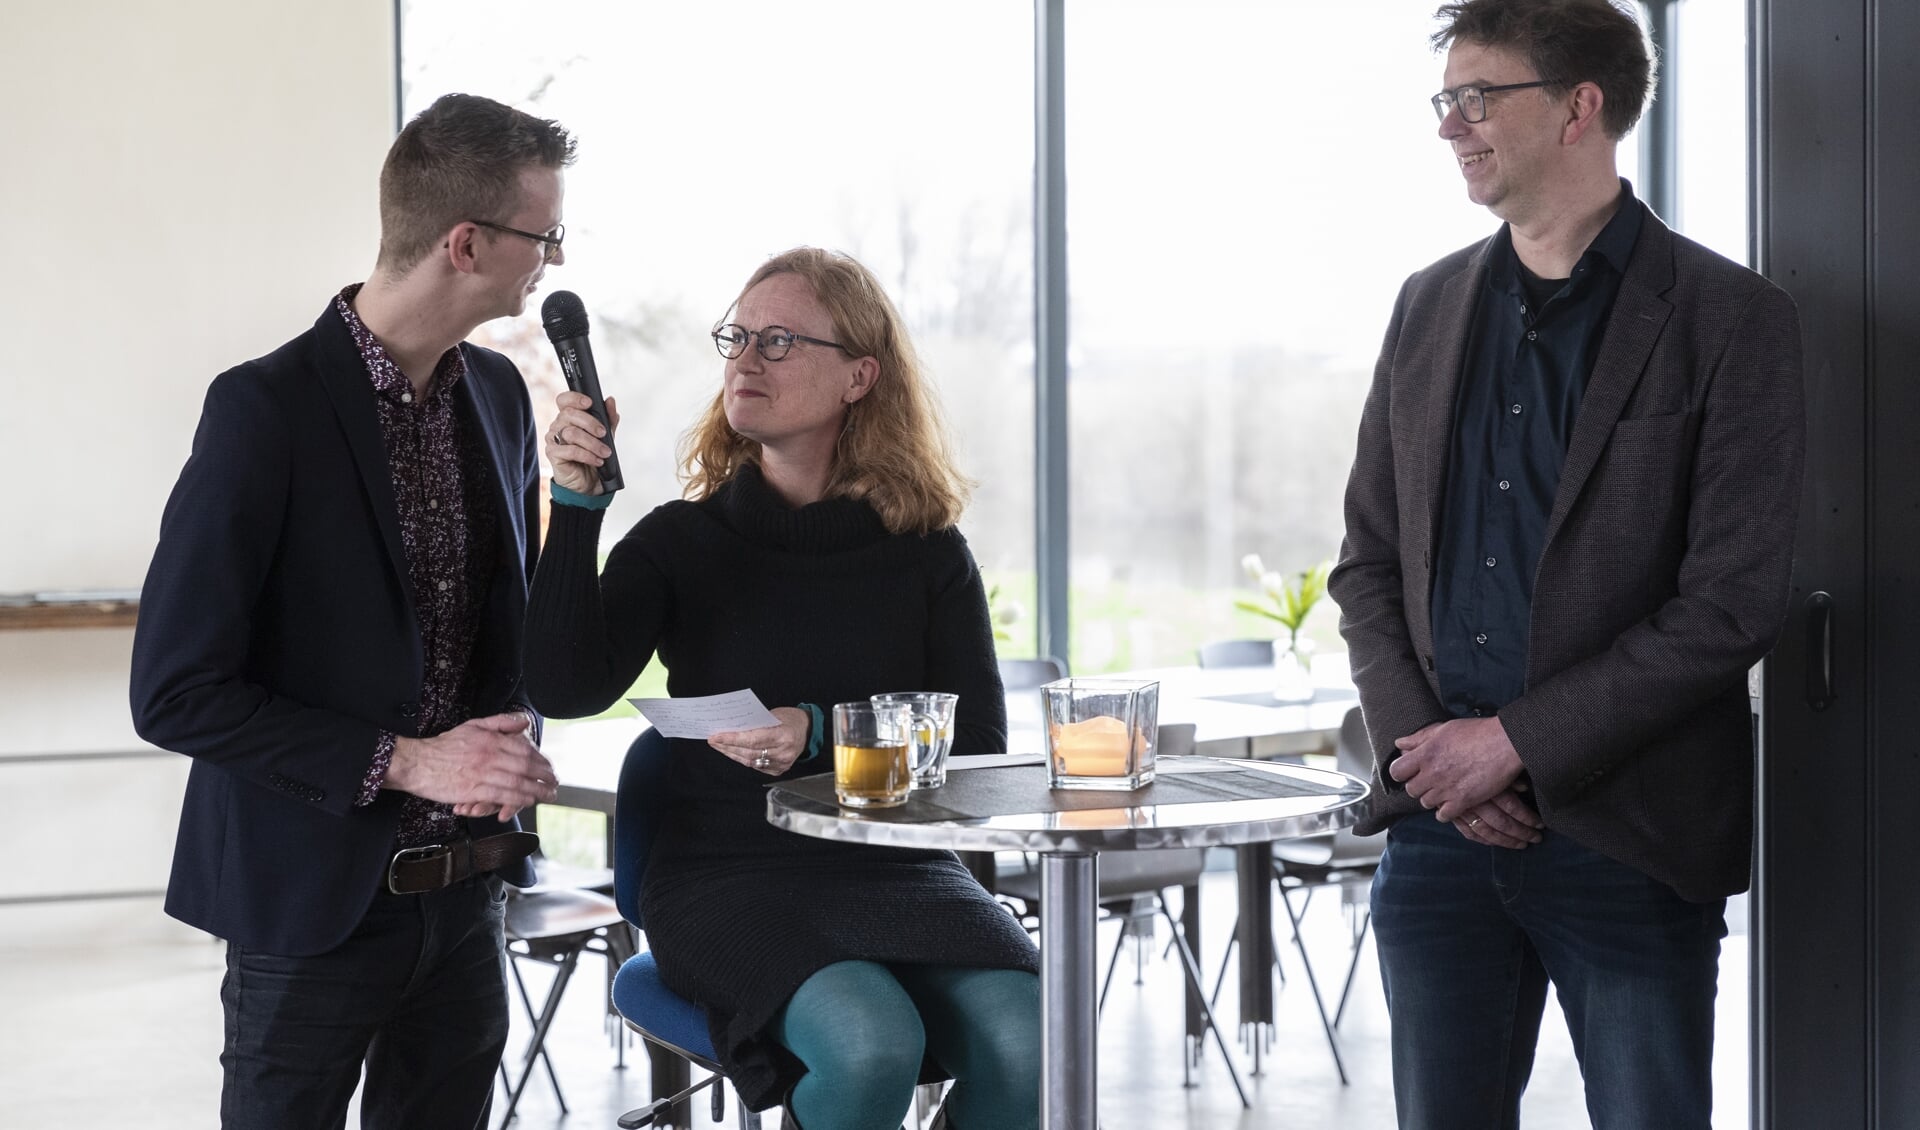 Lisette Lagerweij, directeur van de Muzehof, bevraagt de wethouders Mathijs ten Broeke en Henk van Zeijts over 'hun' erfgoed. Foto: Patrick van Gemert